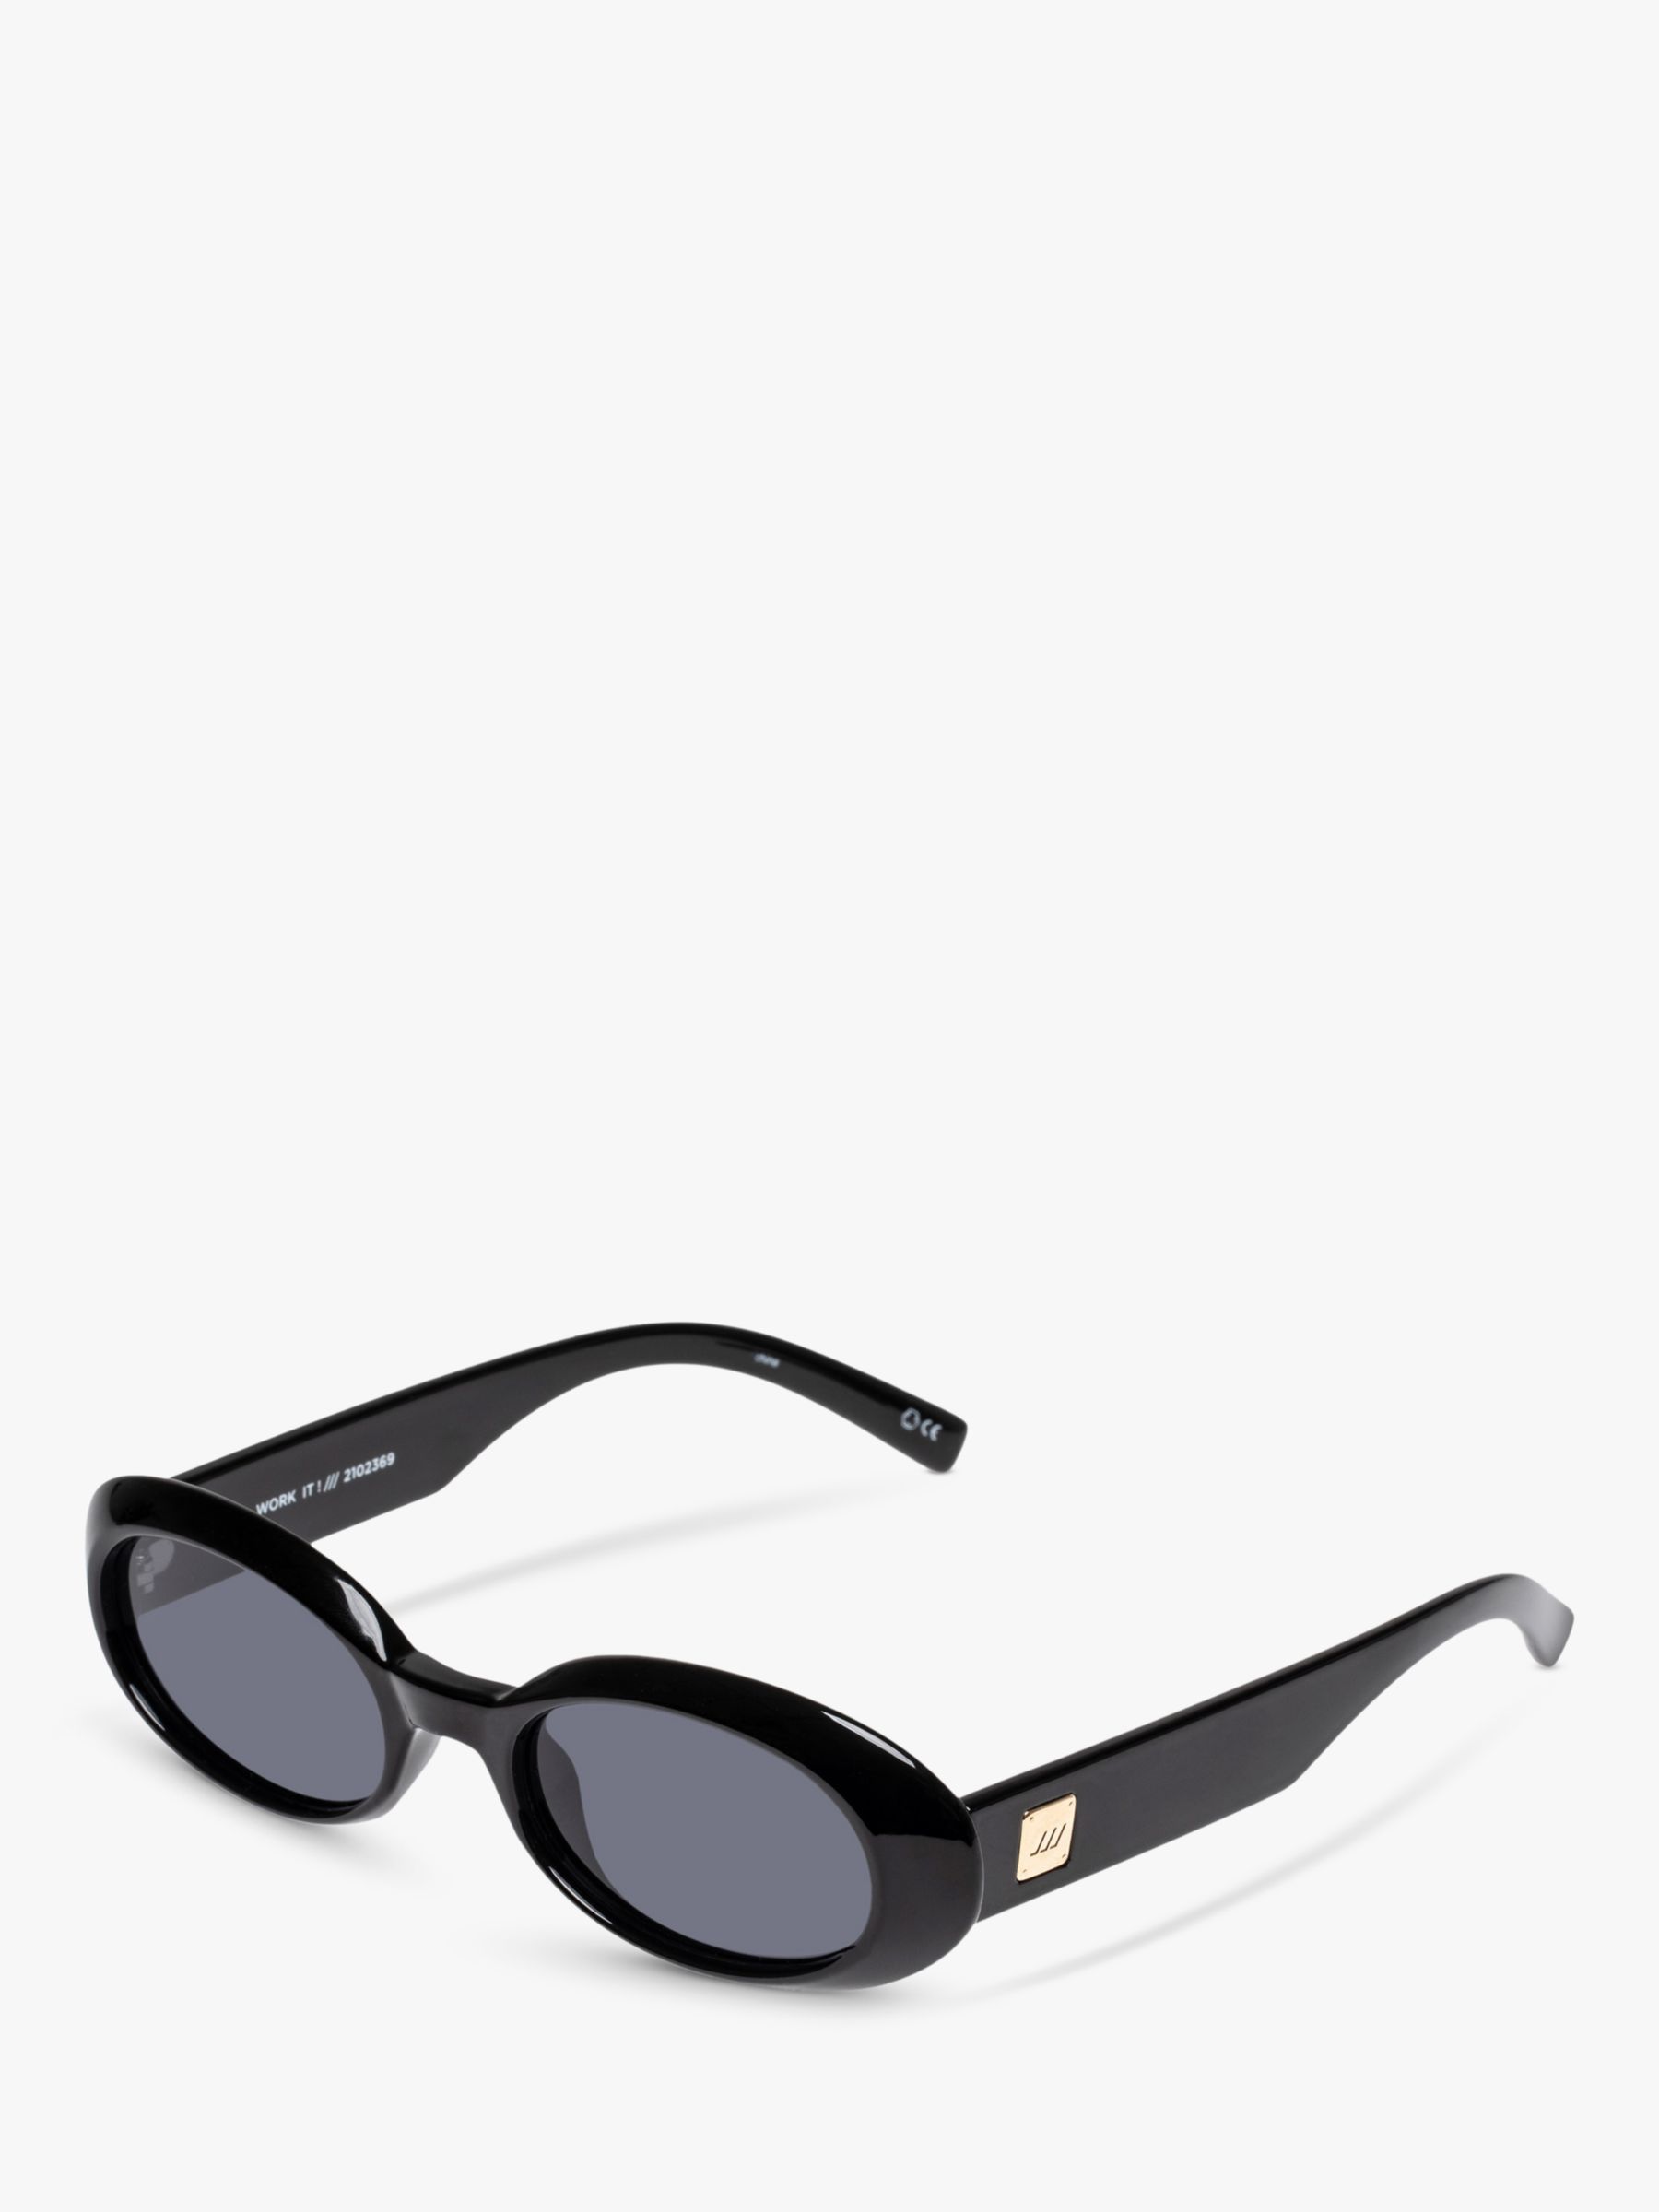 L5000187 Женские овальные солнцезащитные очки Work It Le Specs, черный/серый